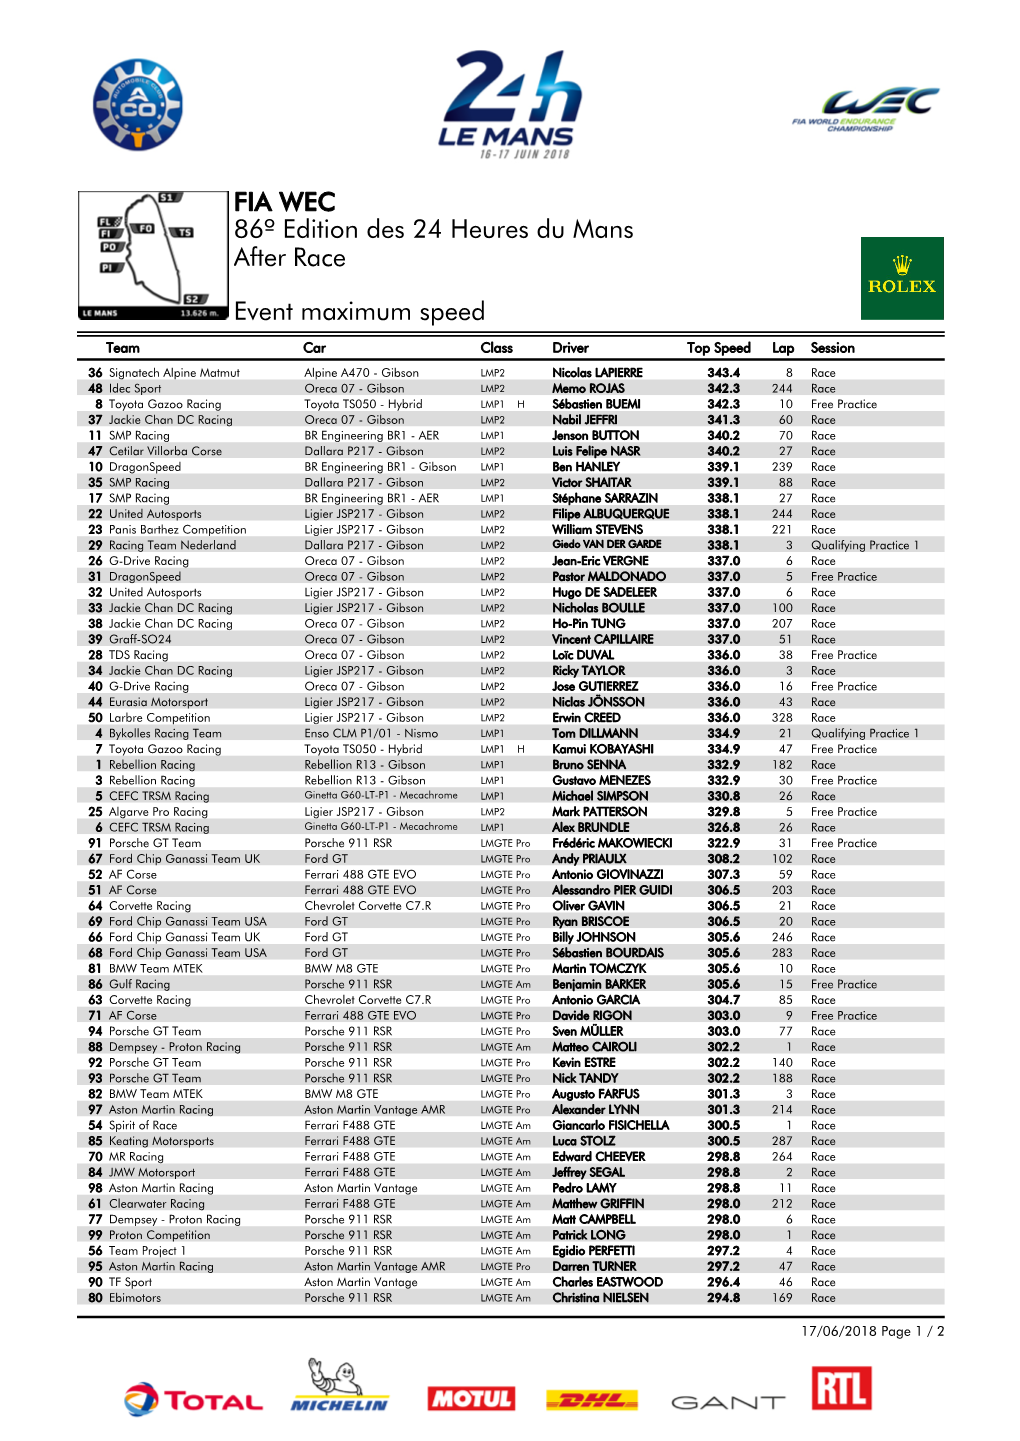 Event Maximum Speed Race 86º Edition Des 24 Heures Du Mans FIA